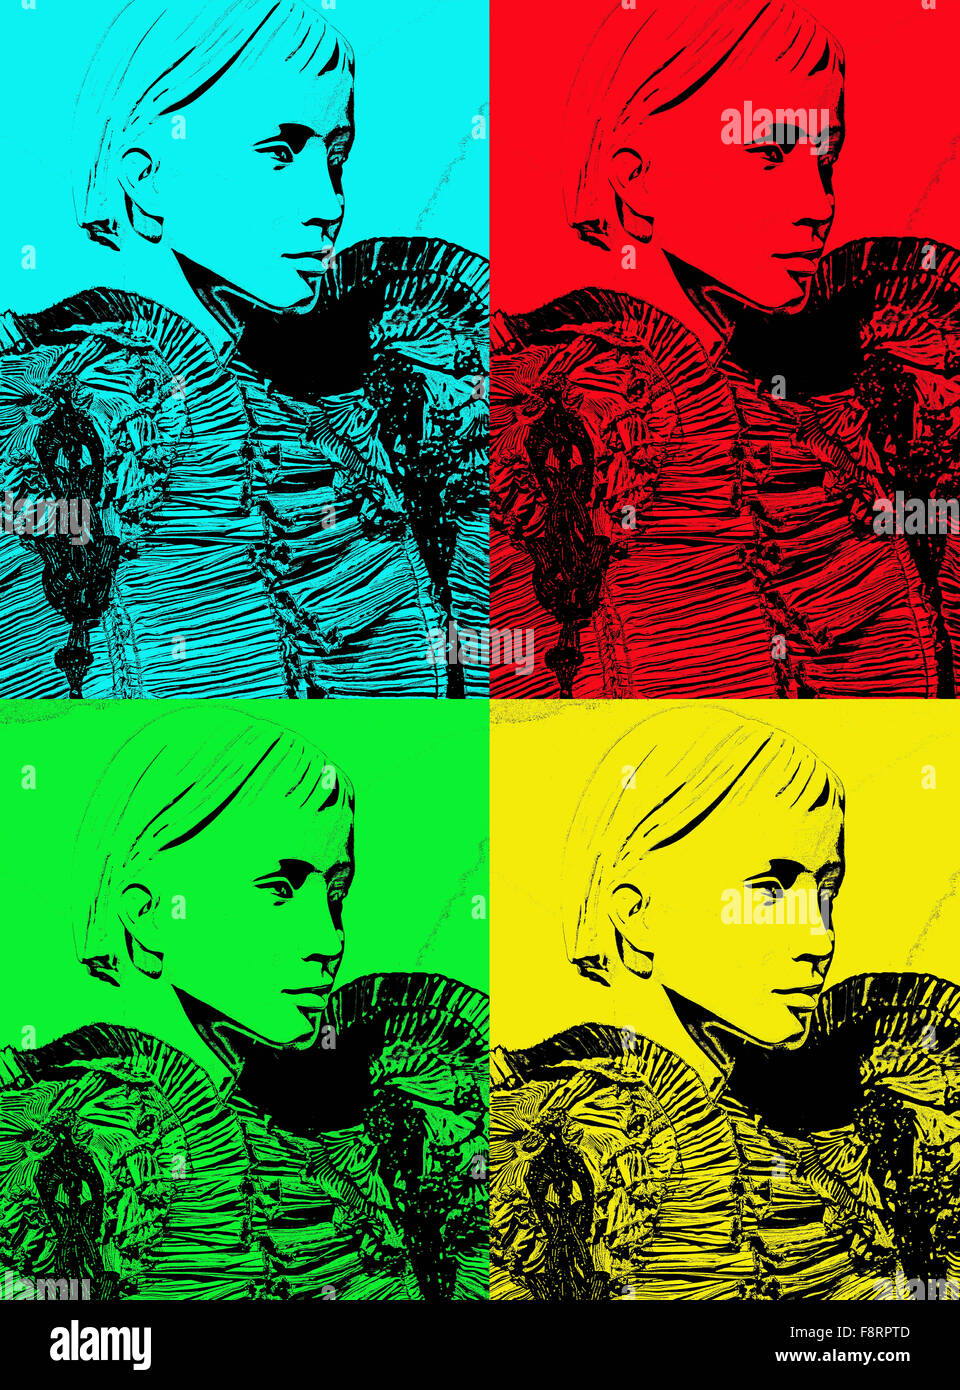 Ritratto creativo di un manichino moltiplicato per quattro volte vestito in una camicetta increspato. Altered digitalmente foto- Arte e illustrazione. Foto Stock